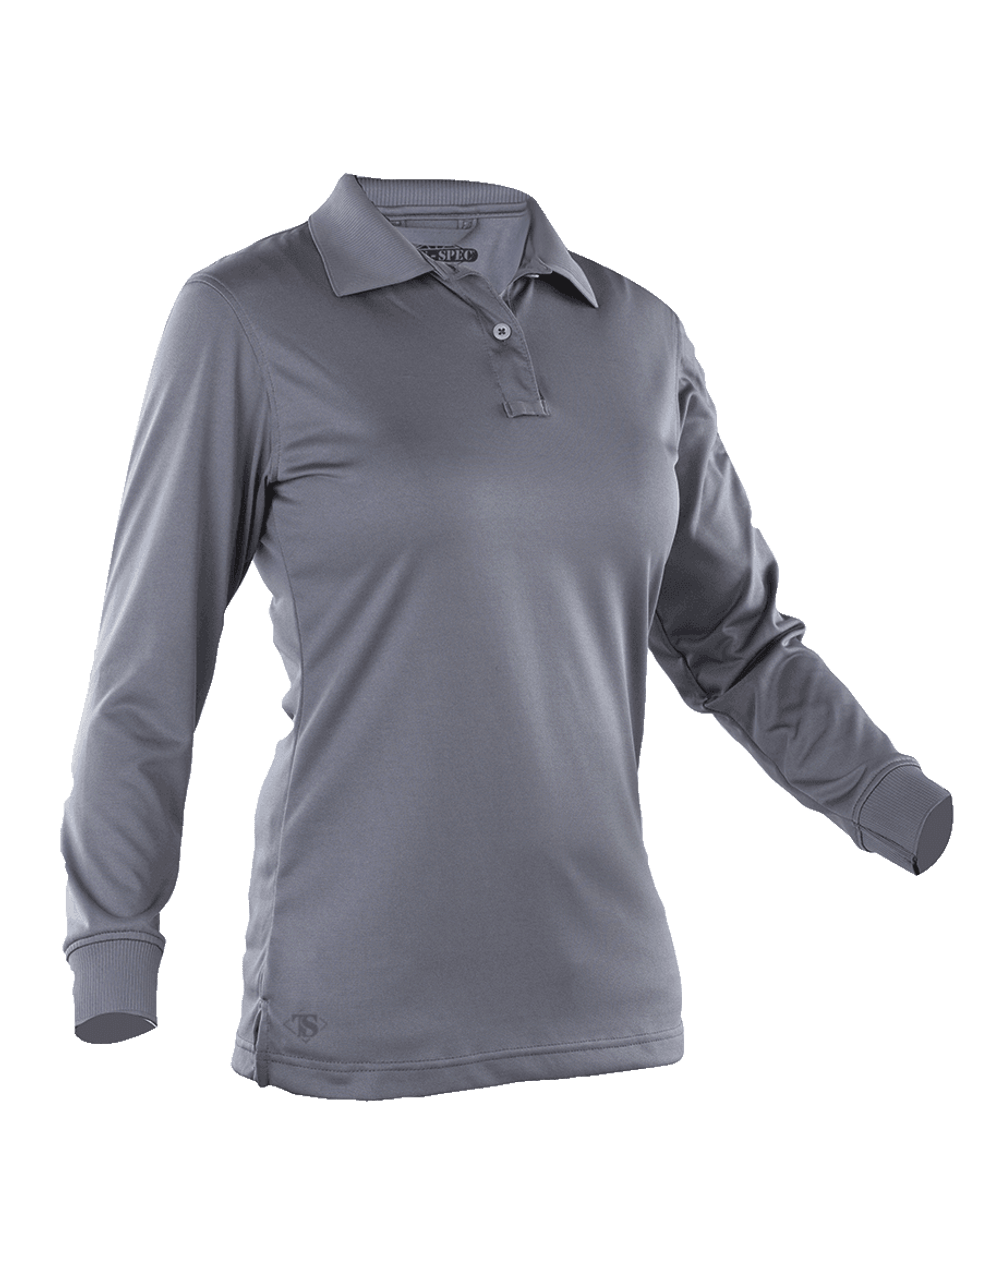 Tru-Spec 24-7 Series Long Sleeve Performance Polo, Women's Steel Gray